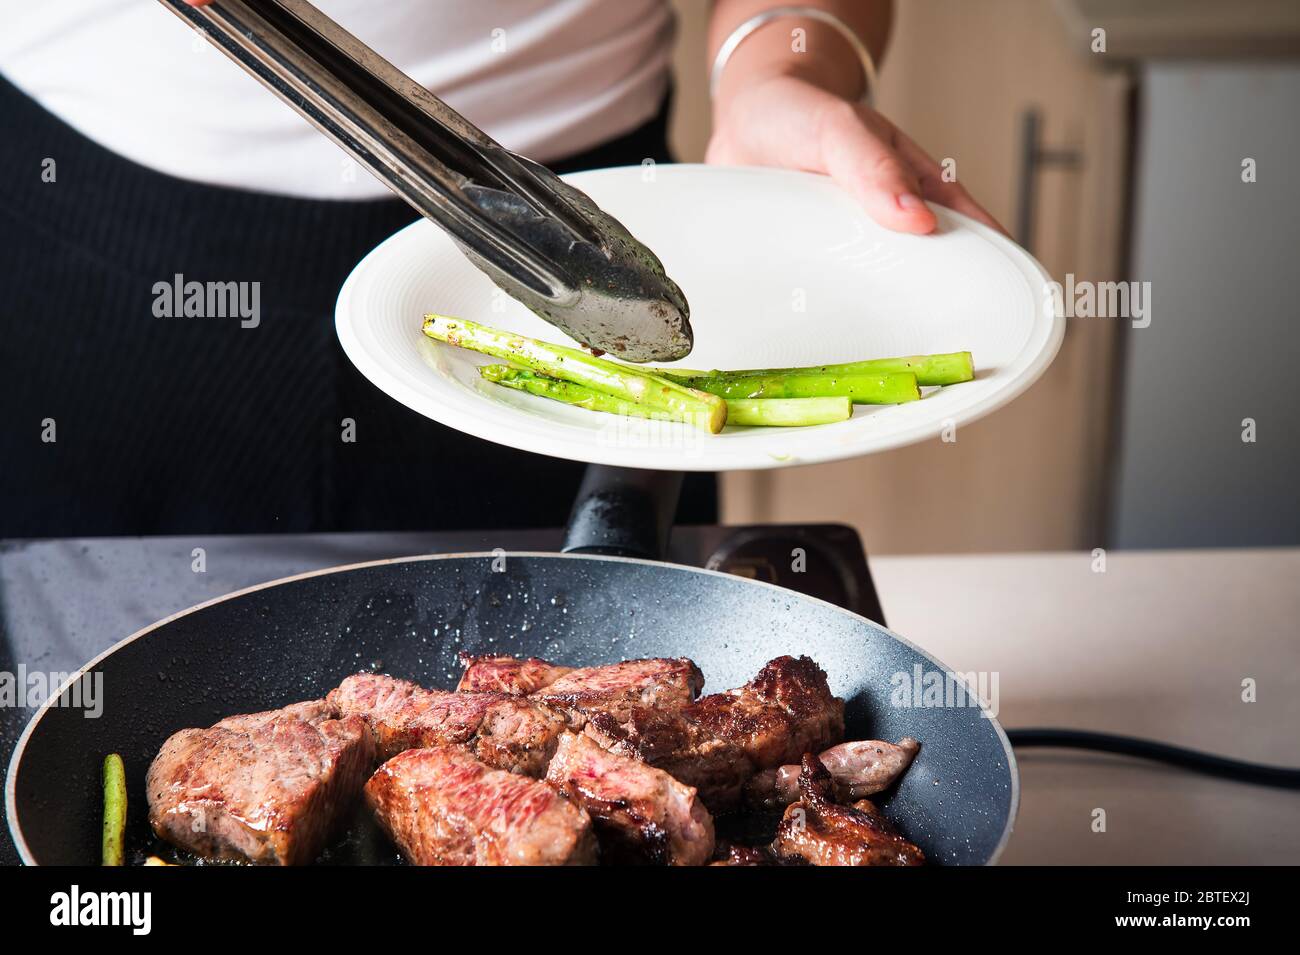 Femme servant un steak de bœuf avec des asperges de bébé sur la poêle. Préparation de nourriture à domicile Banque D'Images